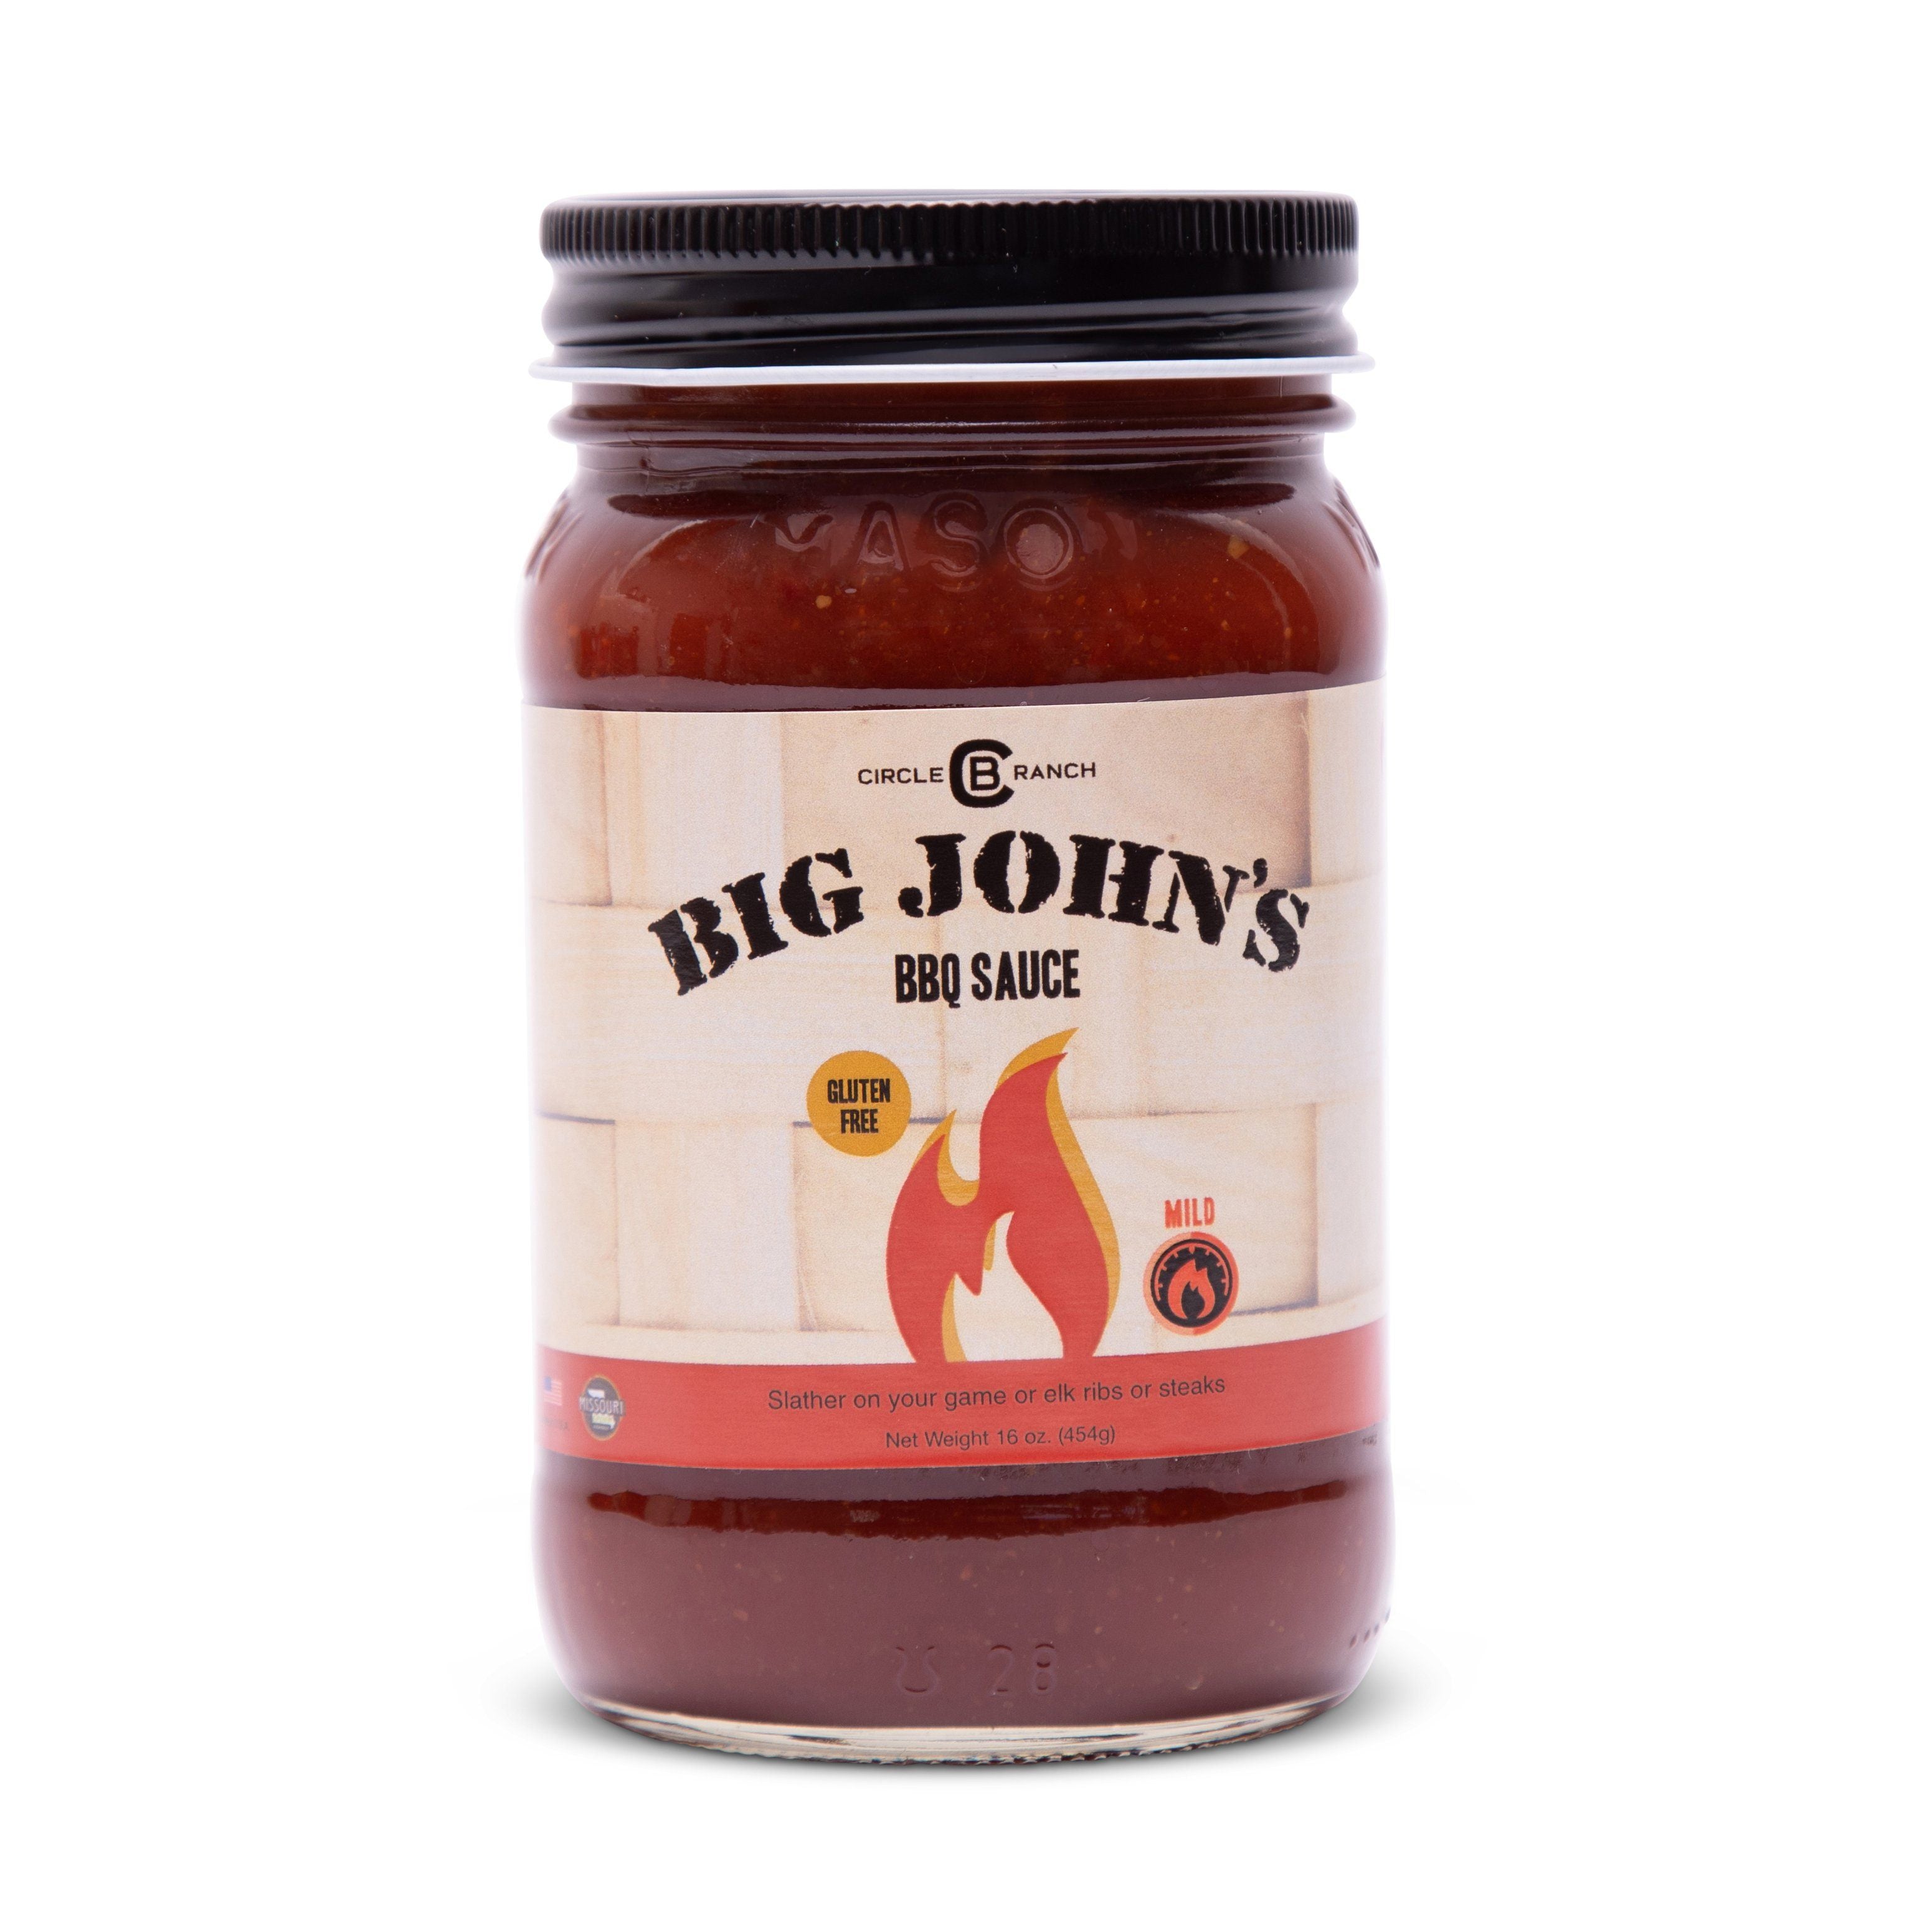 Big John's Signature BBQ Sauce Sauce Circle B Ranch and Marina's Kitchen 